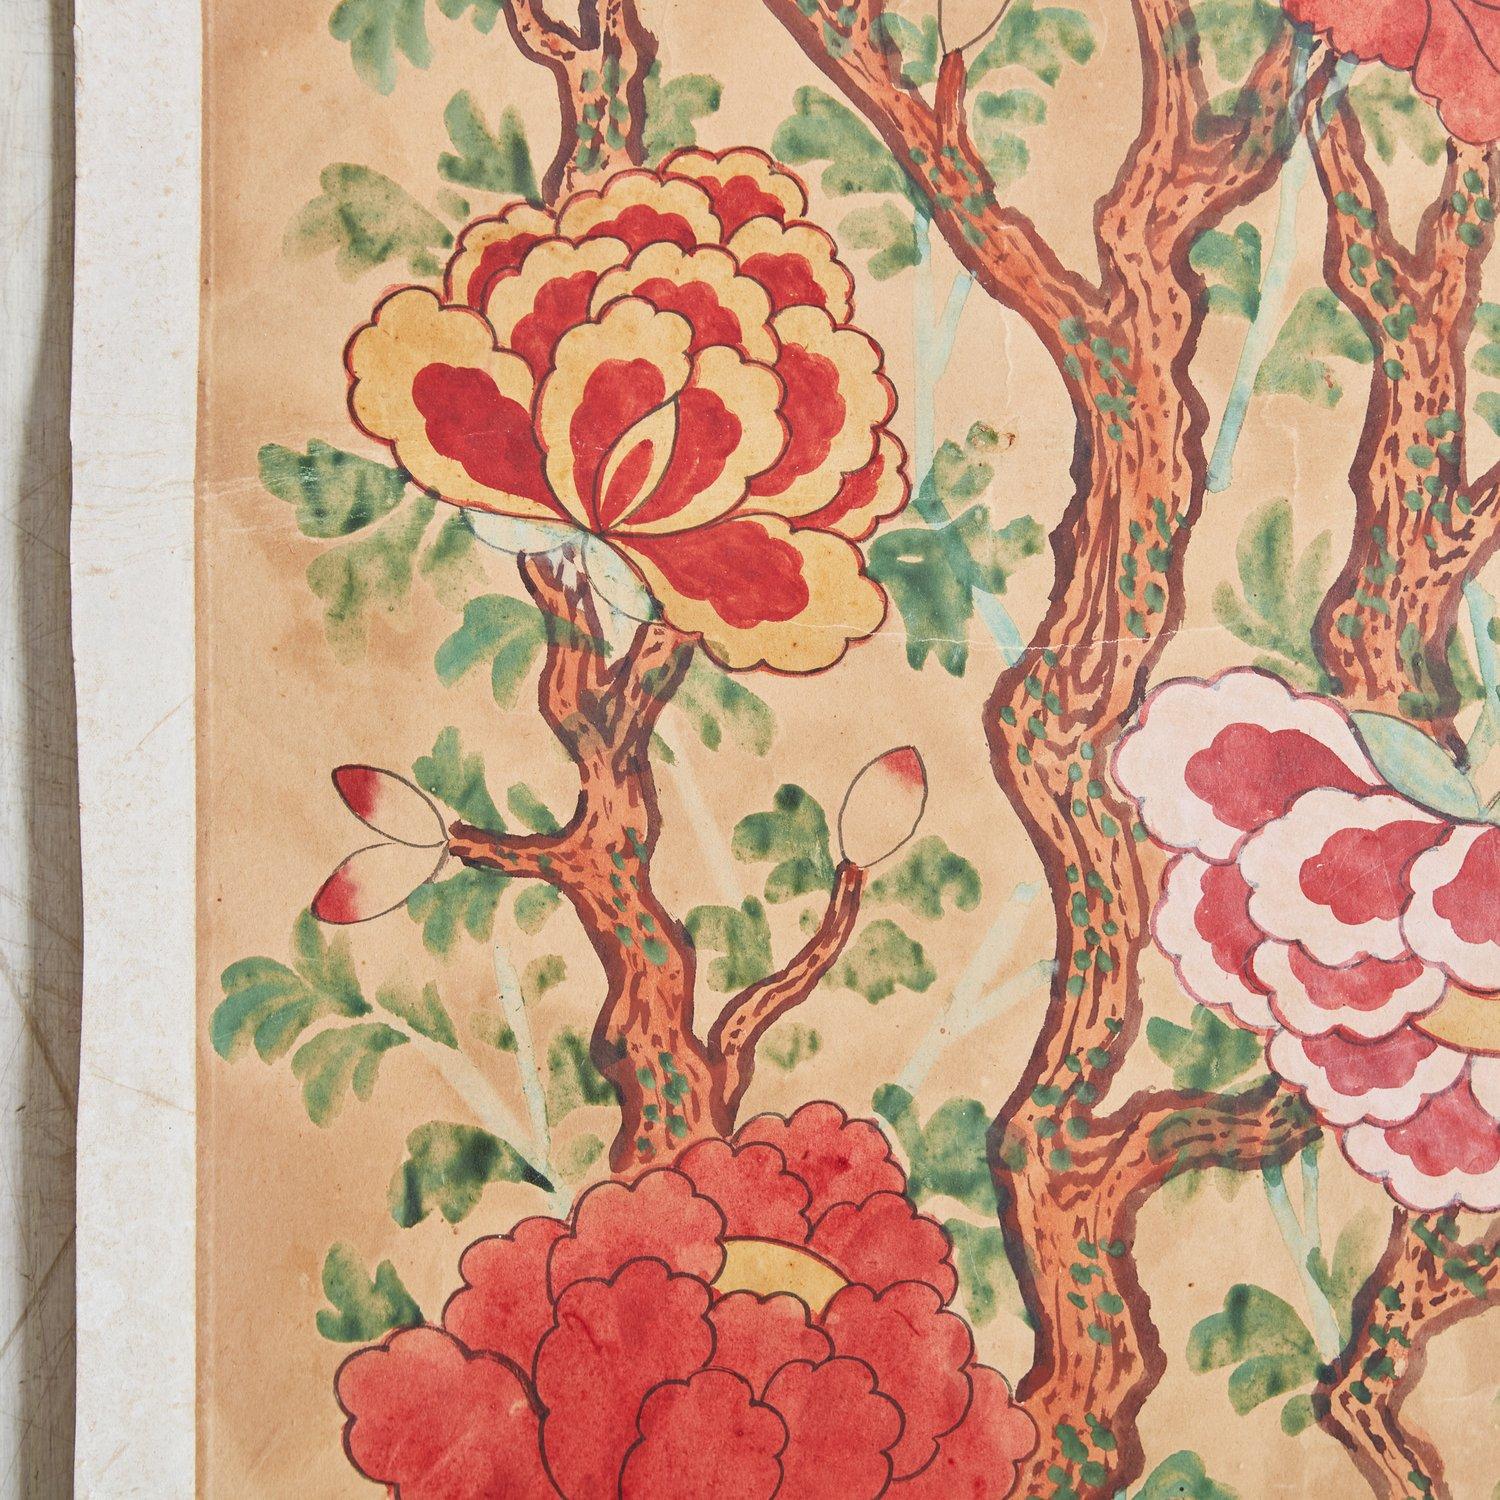 Aquarelle chinoise vintage peinte à la main sur papier, présentant des motifs floraux vibrants. Cette pièce a été acquise auprès d'un collectionneur spécialisé dans l'art chinois basé en Corée et à Taiwan. 20ème siècle. Un disponible.